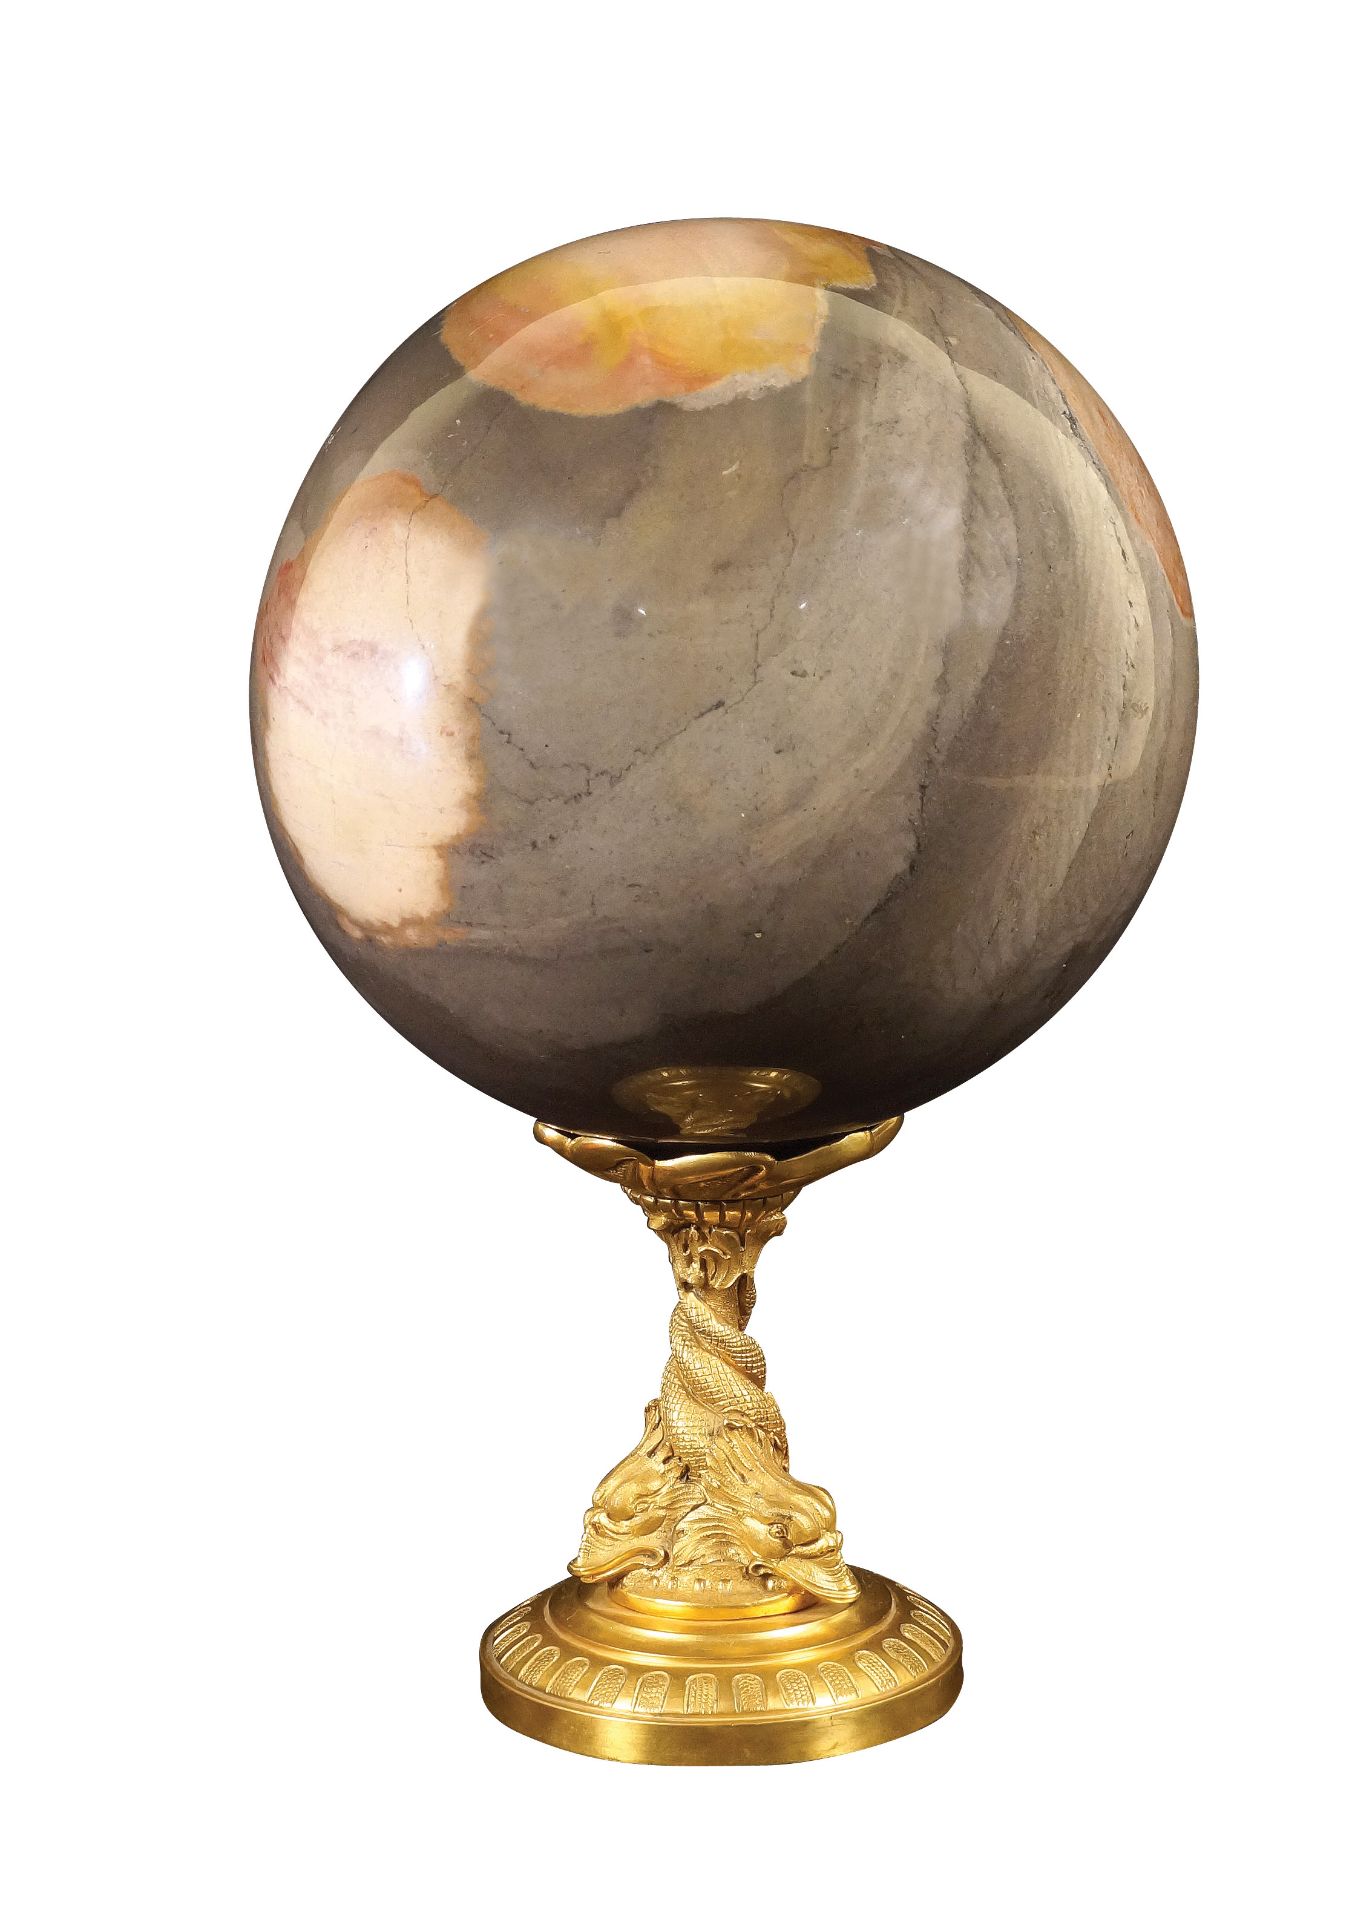 An Italian agate sphere